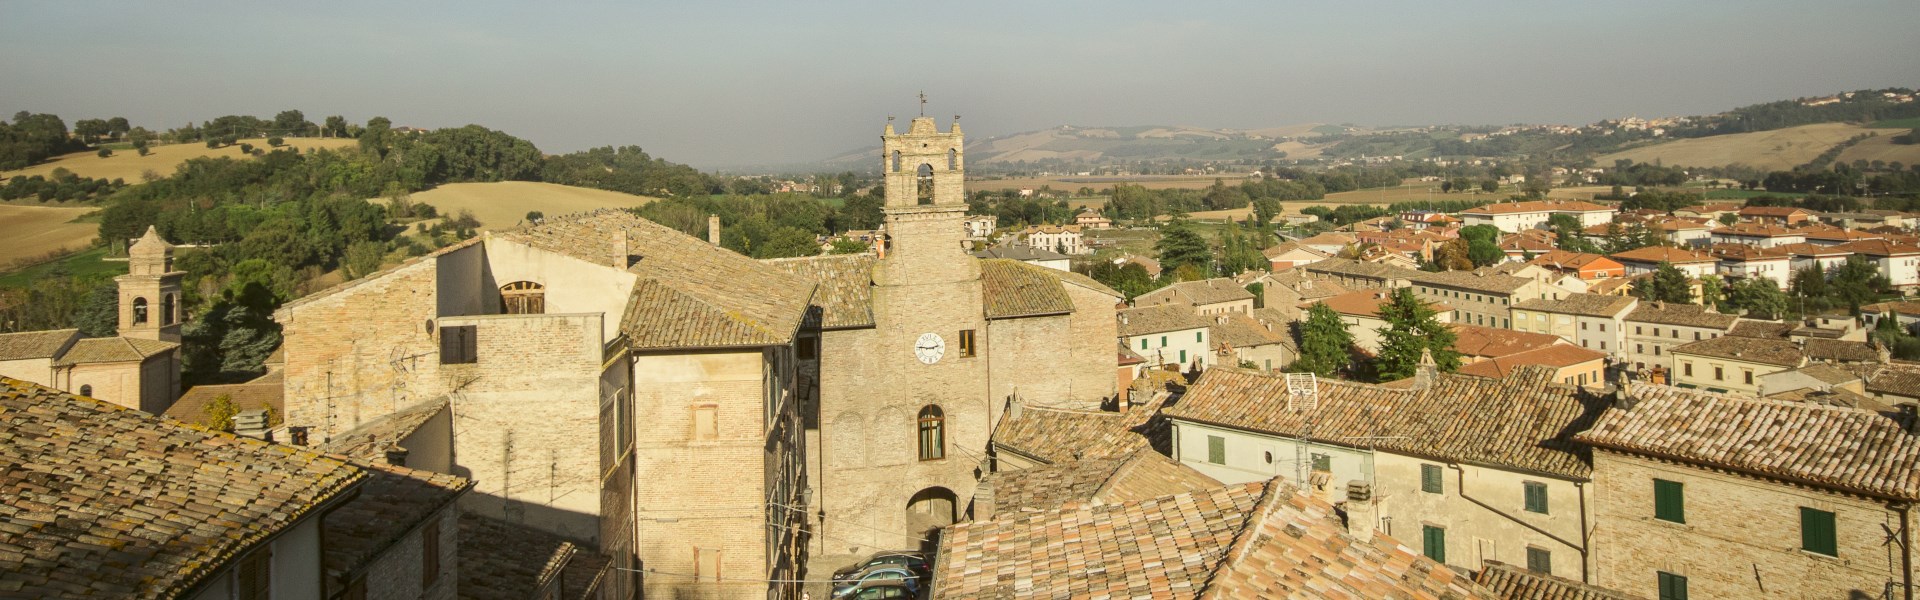 San Lorenzo in Campo - paesaggio